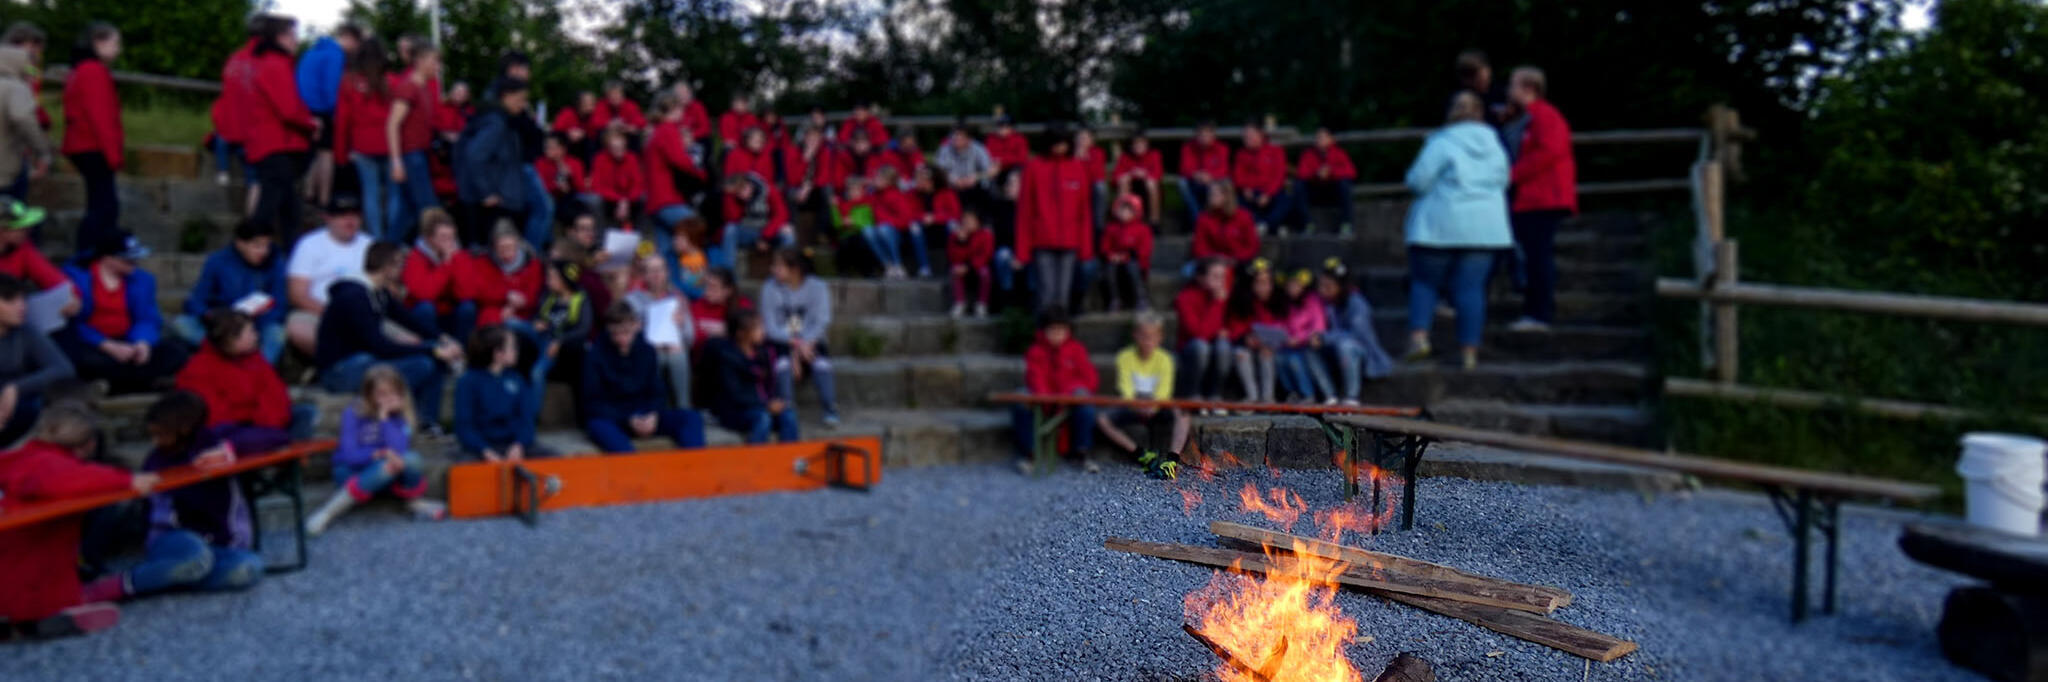 Johanniter-Jugendliche sitzen um ein Lagerfeuer